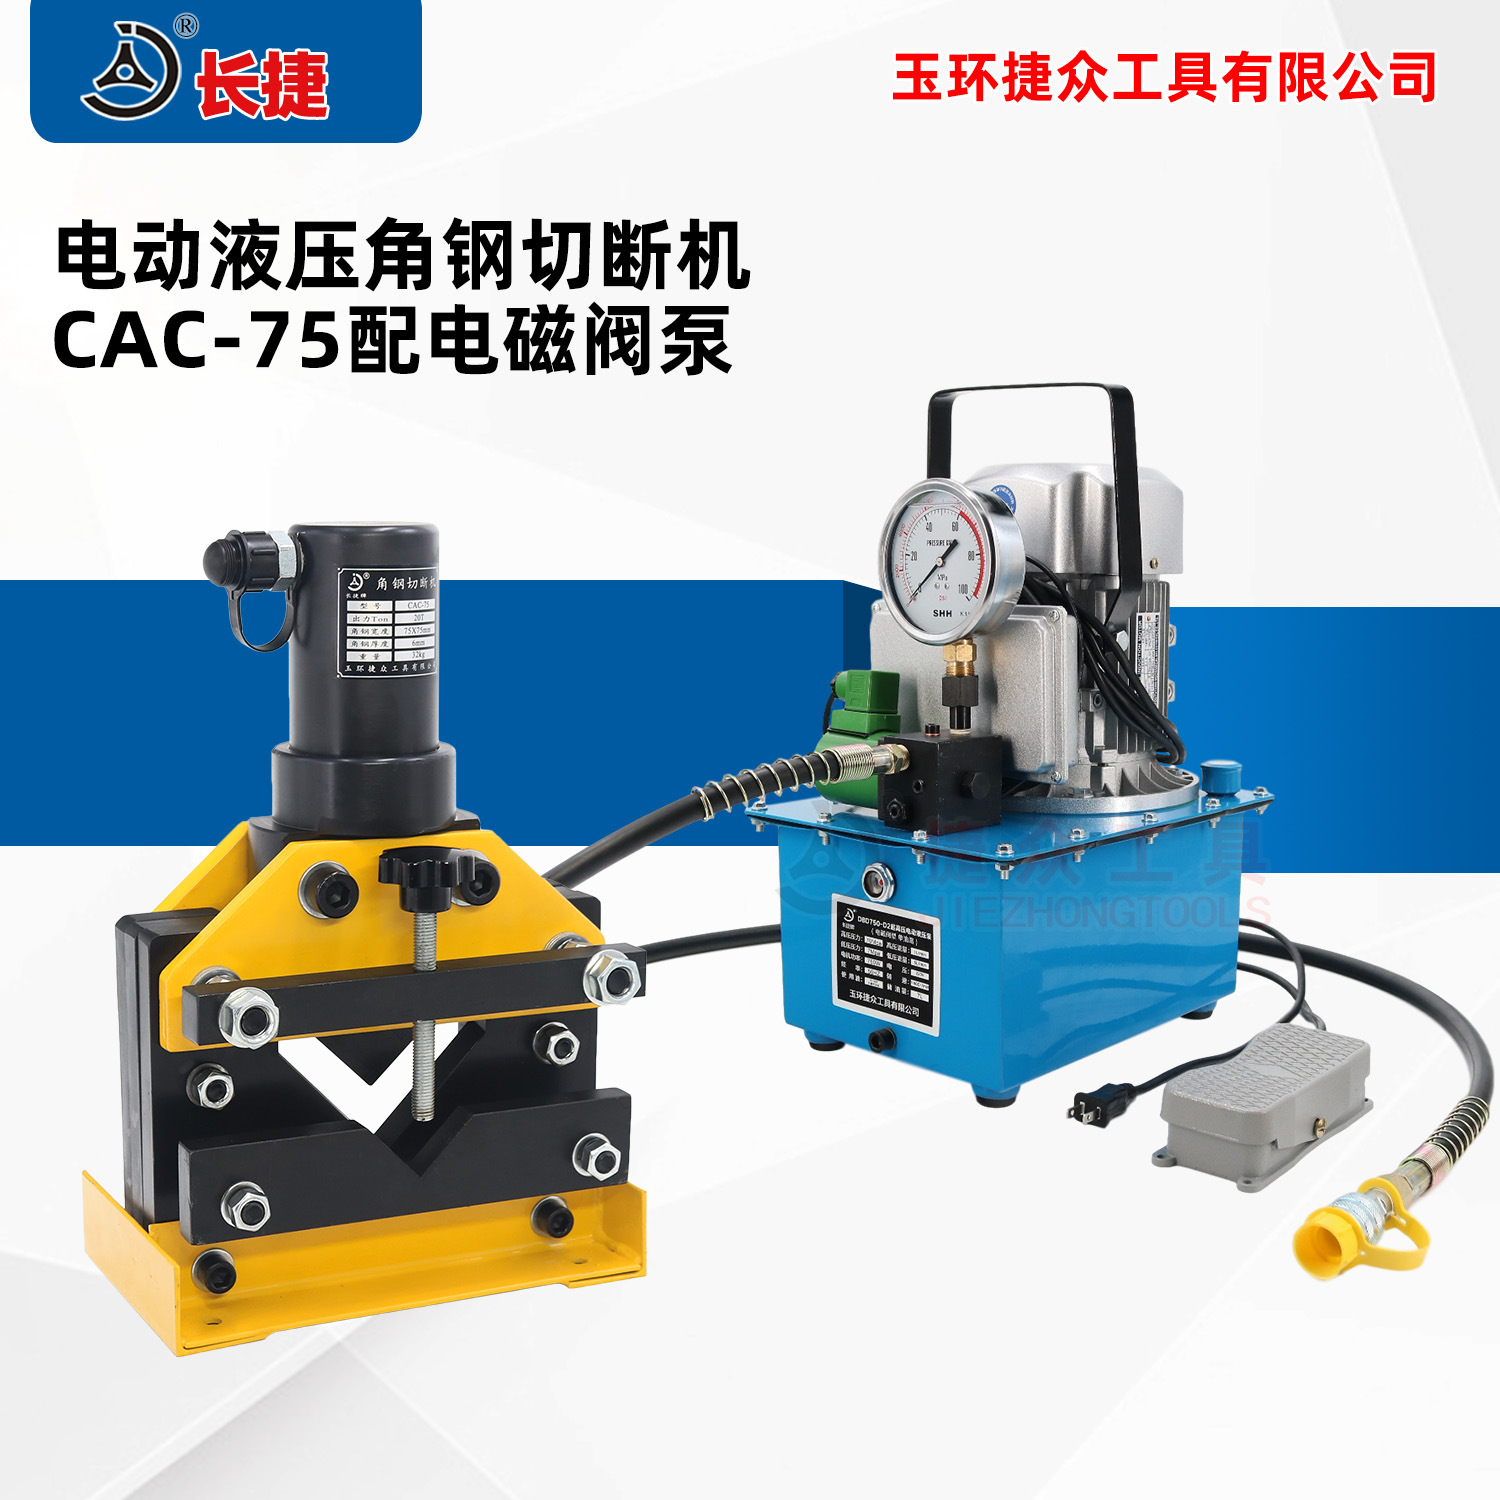 电动角钢切断机CAC-75 裁断快切口平整 便携液压角铁剪断器